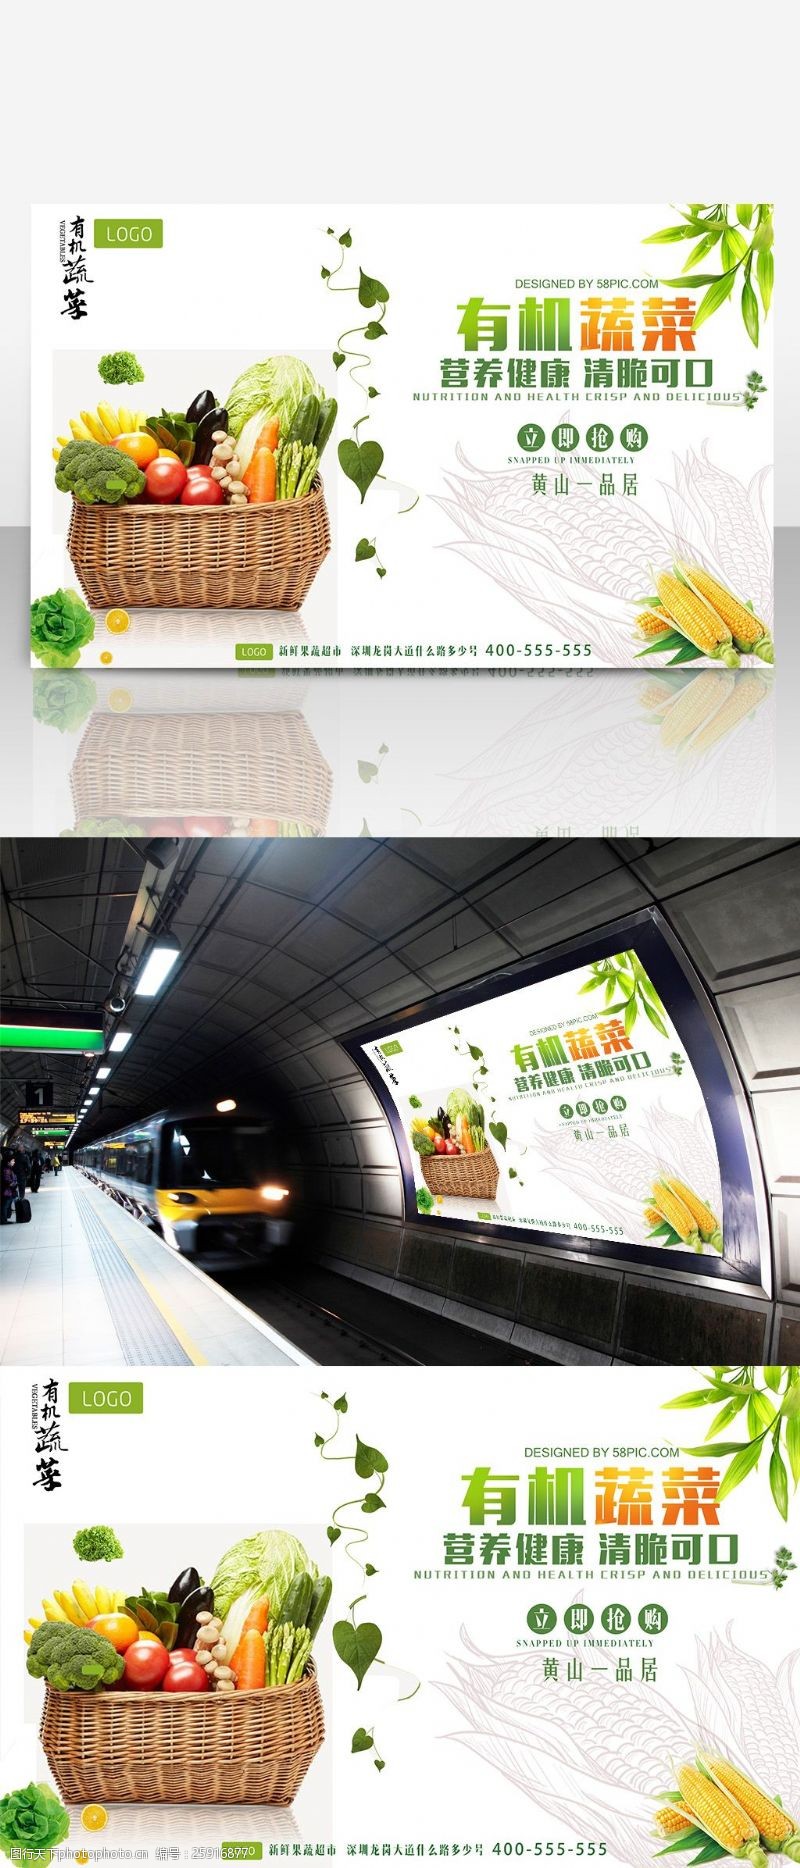 绿色蔬菜海报免费健康餐创意有机蔬菜海报设计